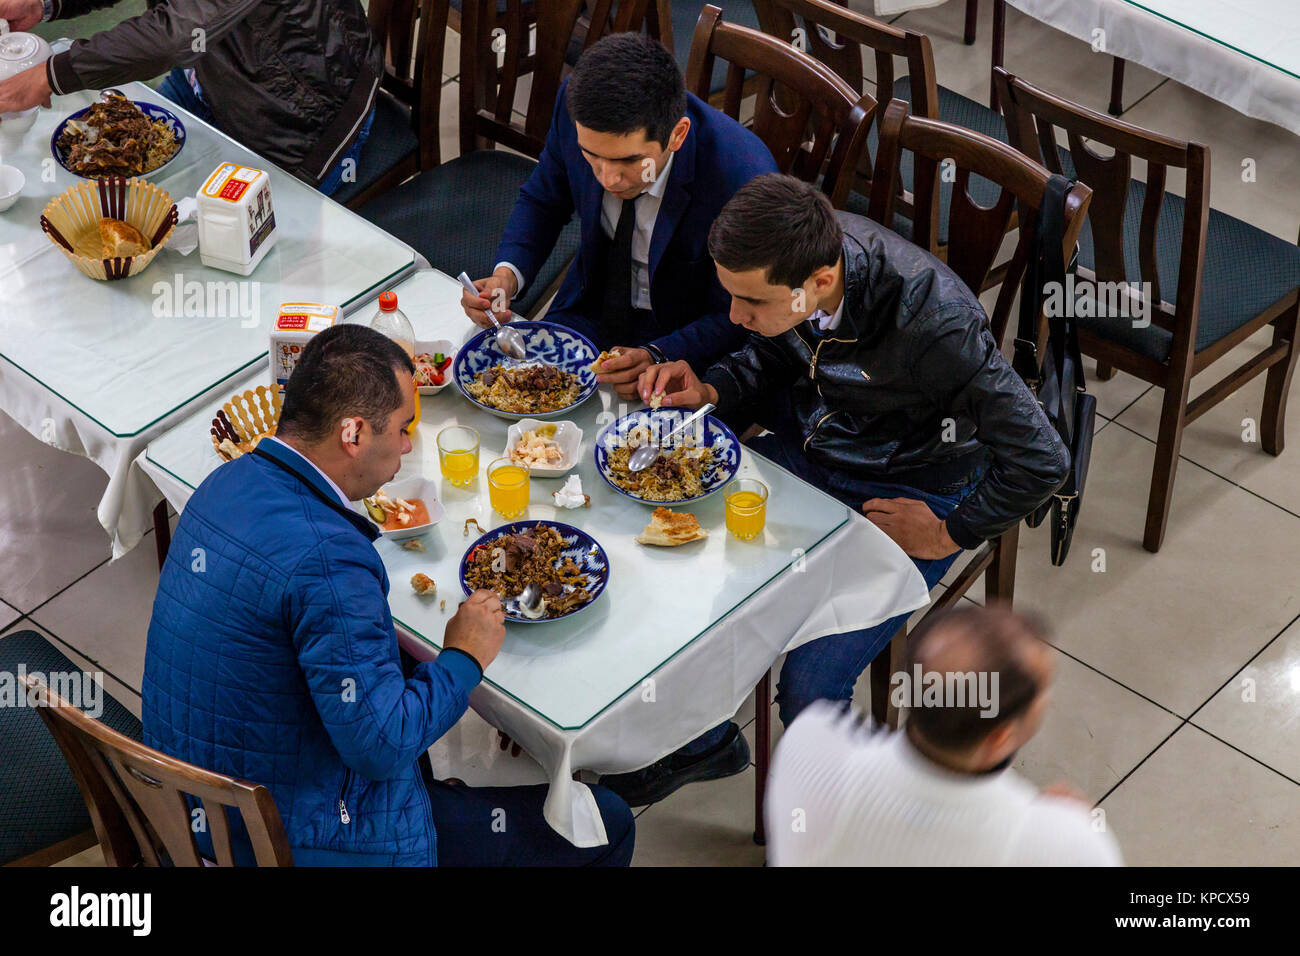 Usbekische Männer essen PLOV (Nationalgericht) An der Zentralasiatischen Plov Center, Taschkent, Usbekistan Stockfoto